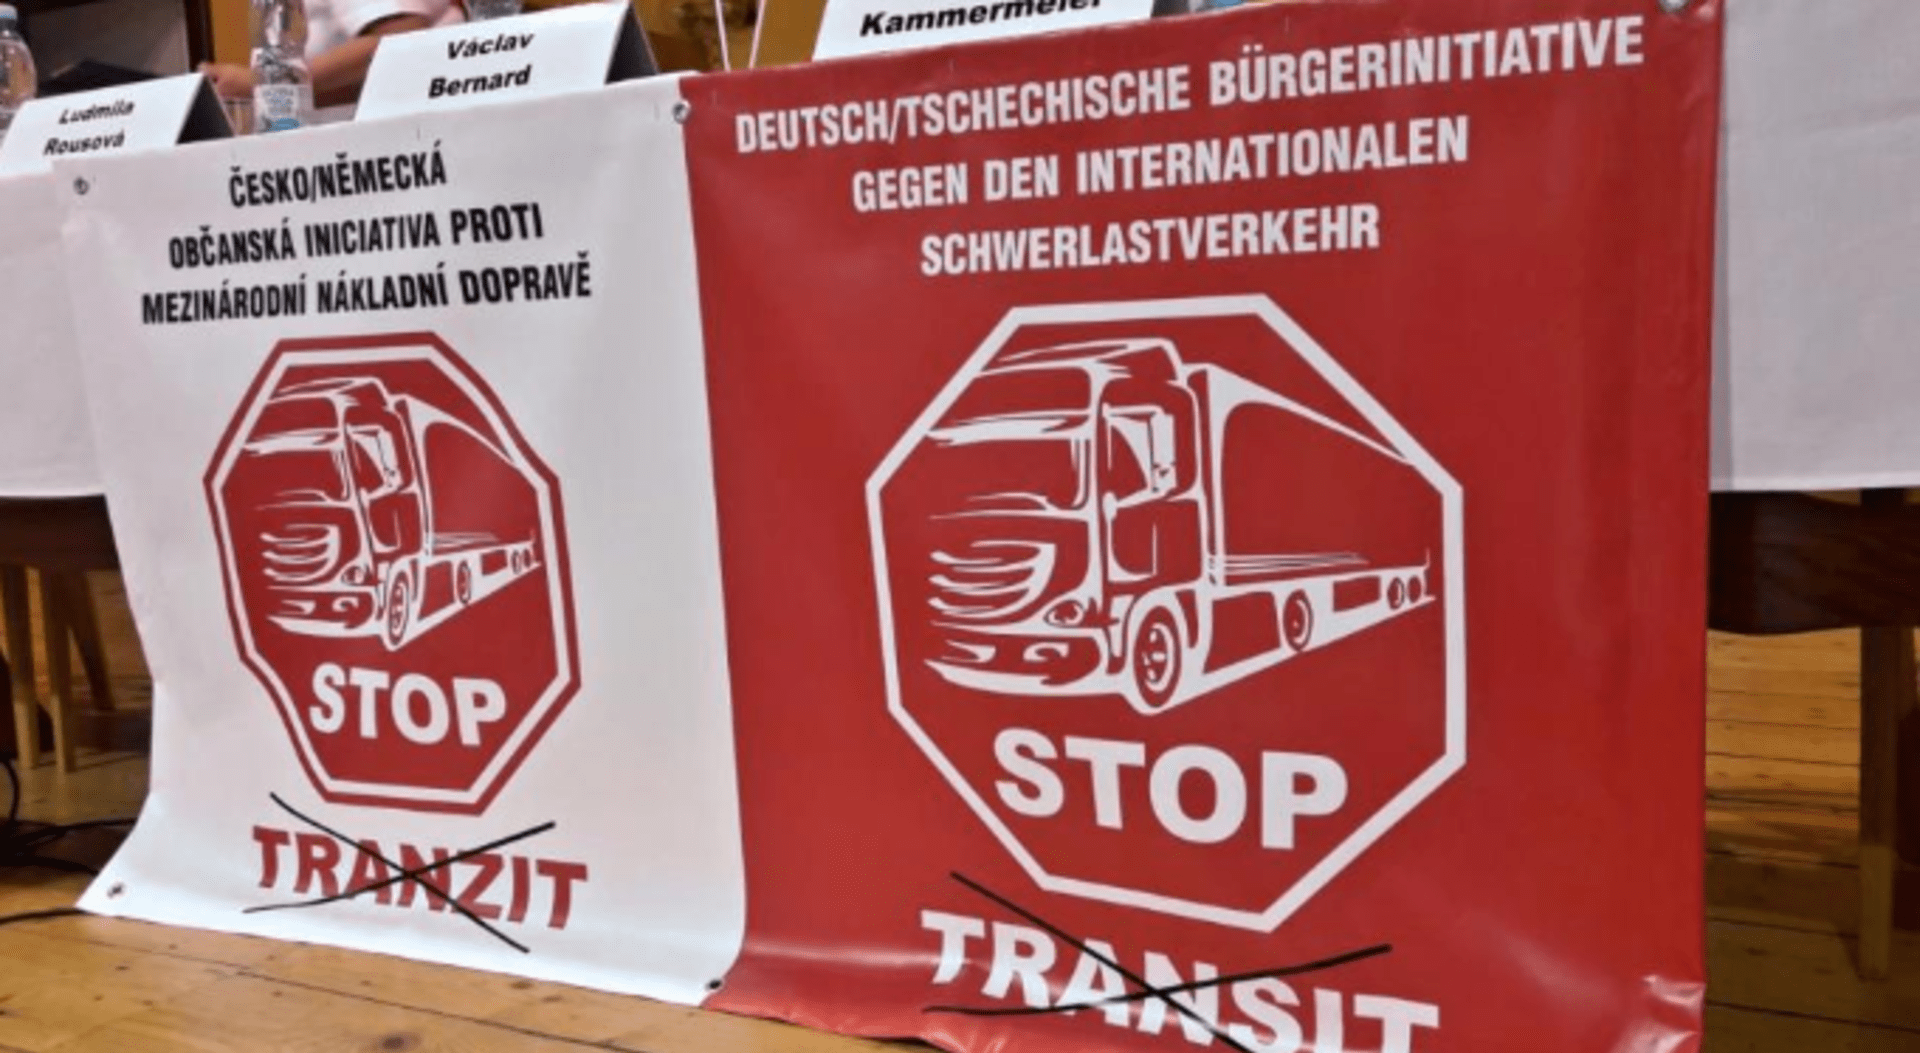 Česko/německá občanská iniciativa proti mezinárodní nákladní dopravě